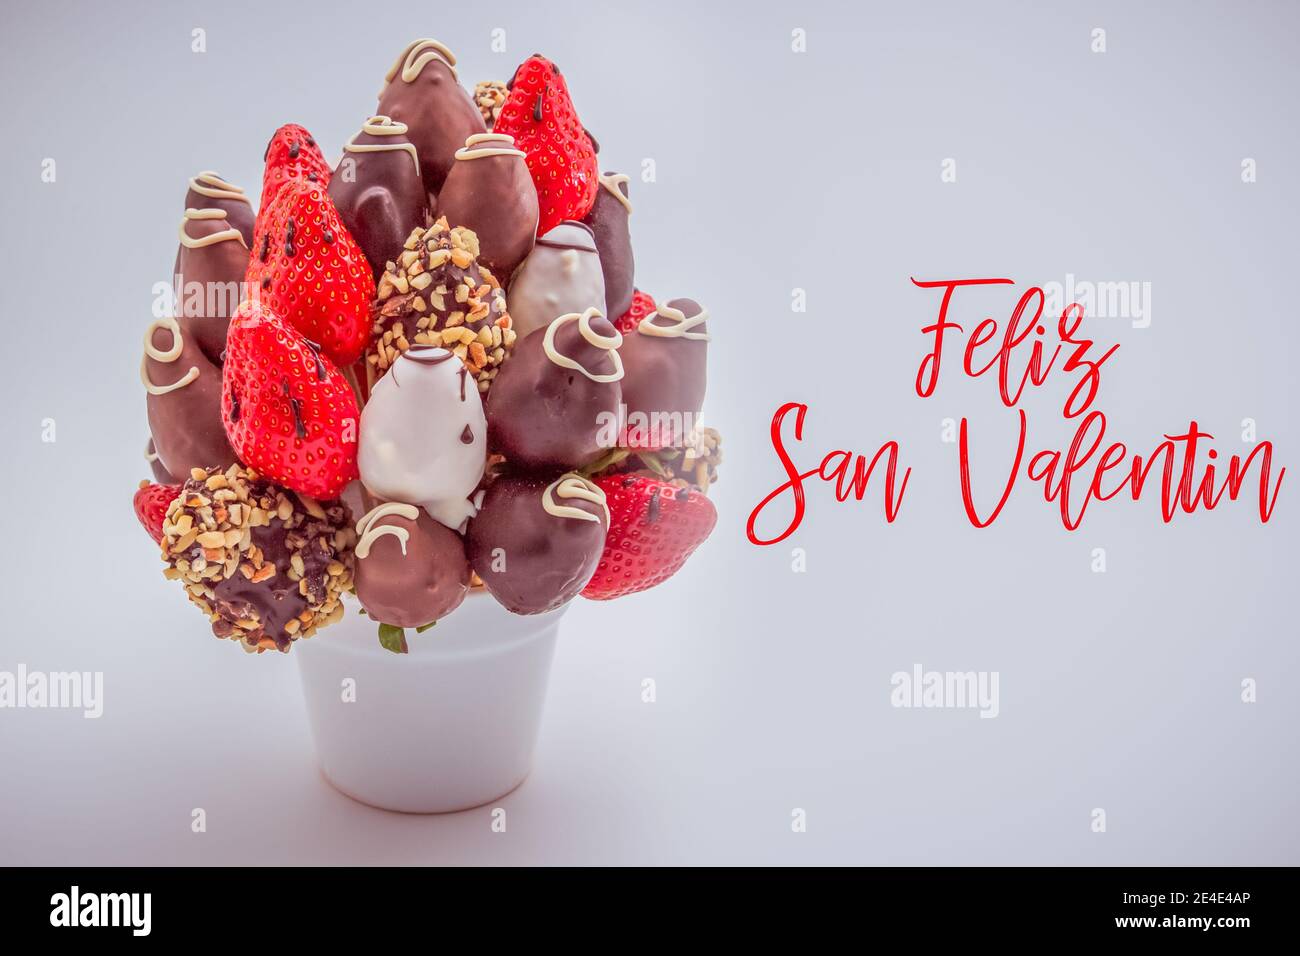 Carte de vœux de bonne Saint Valentin en espagnol avec des lettres rouges qui lit Feliz San Valentin; bouquet de fleurs comestibles, arrangement de trempette au chocolat Banque D'Images